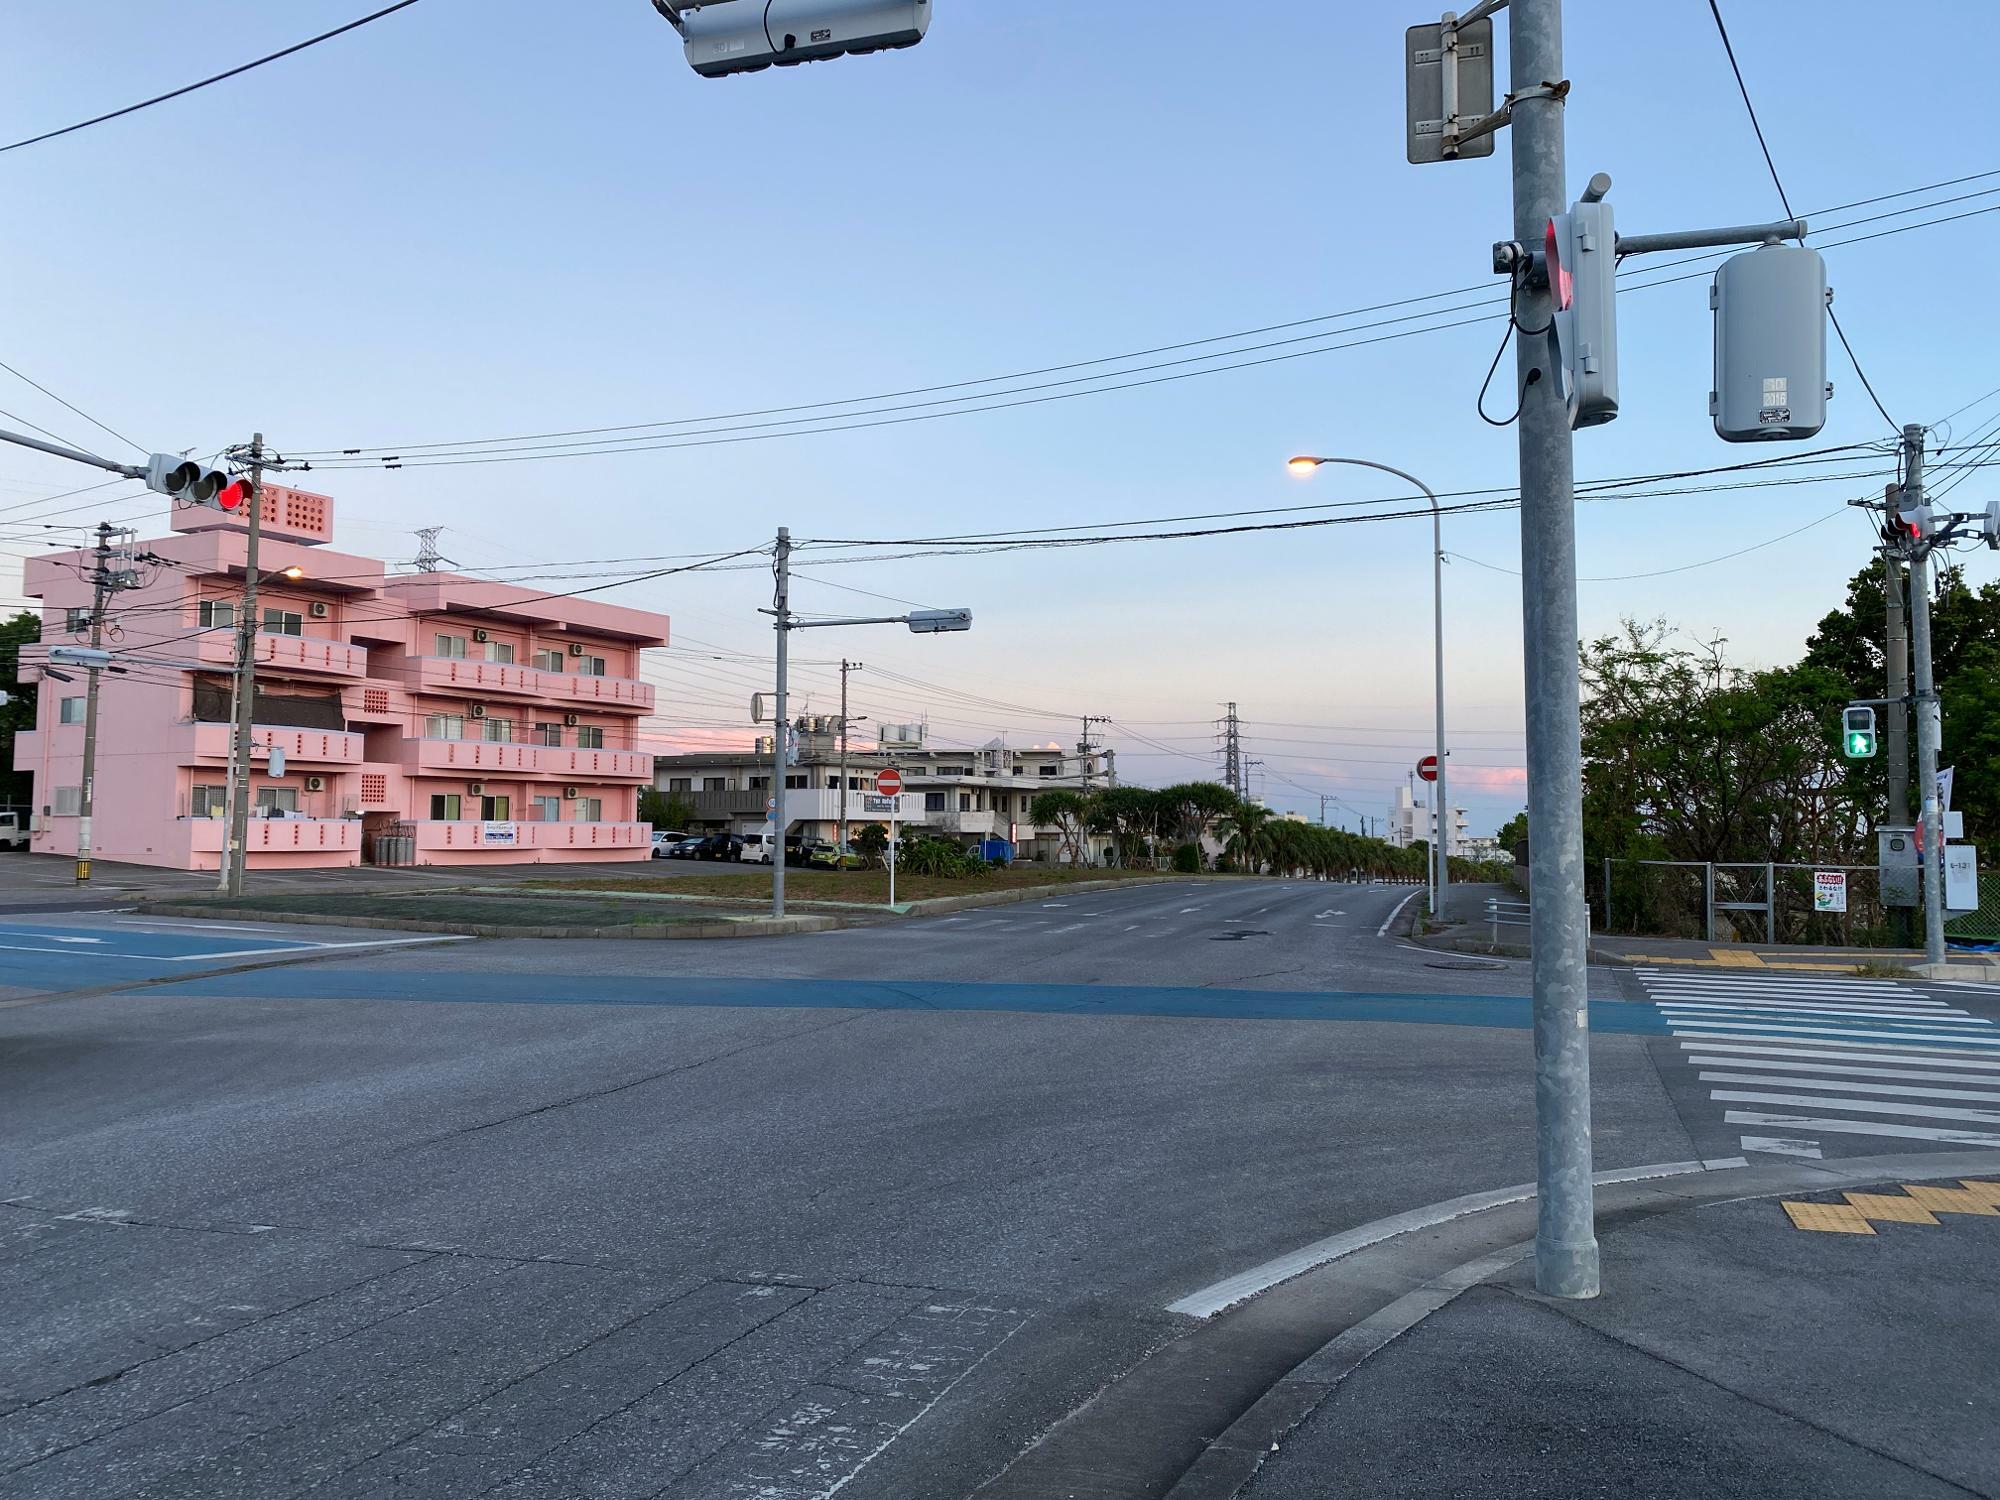 沖縄市消防署山内出張所前の交差点。画像奥が沖縄アリーナの方向